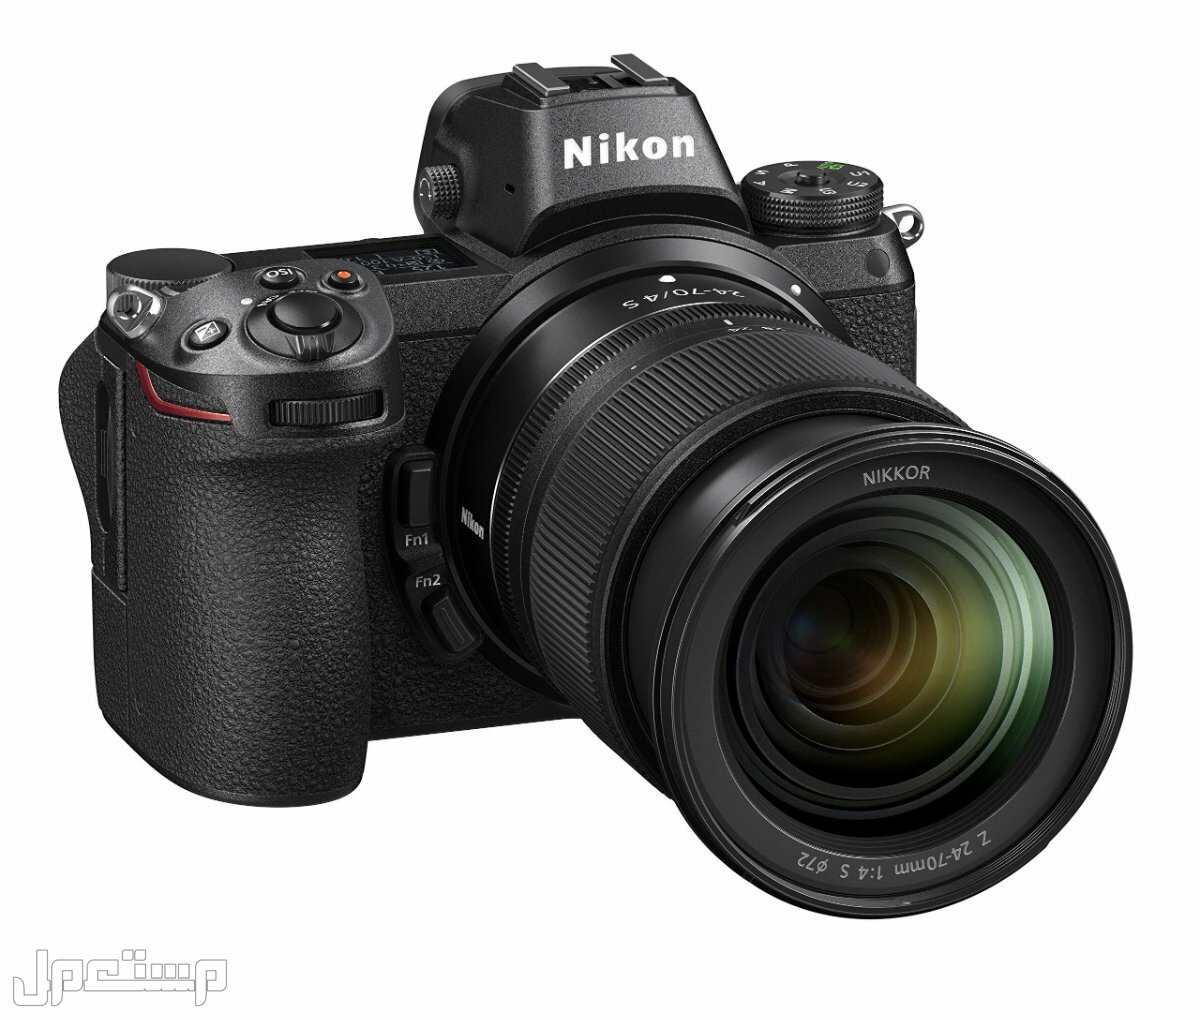 مواصفات ومميزات وأسعار أفضل أنواع كاميرات نيكون للمحترفين في البحرين كاميرا Nikon Z6